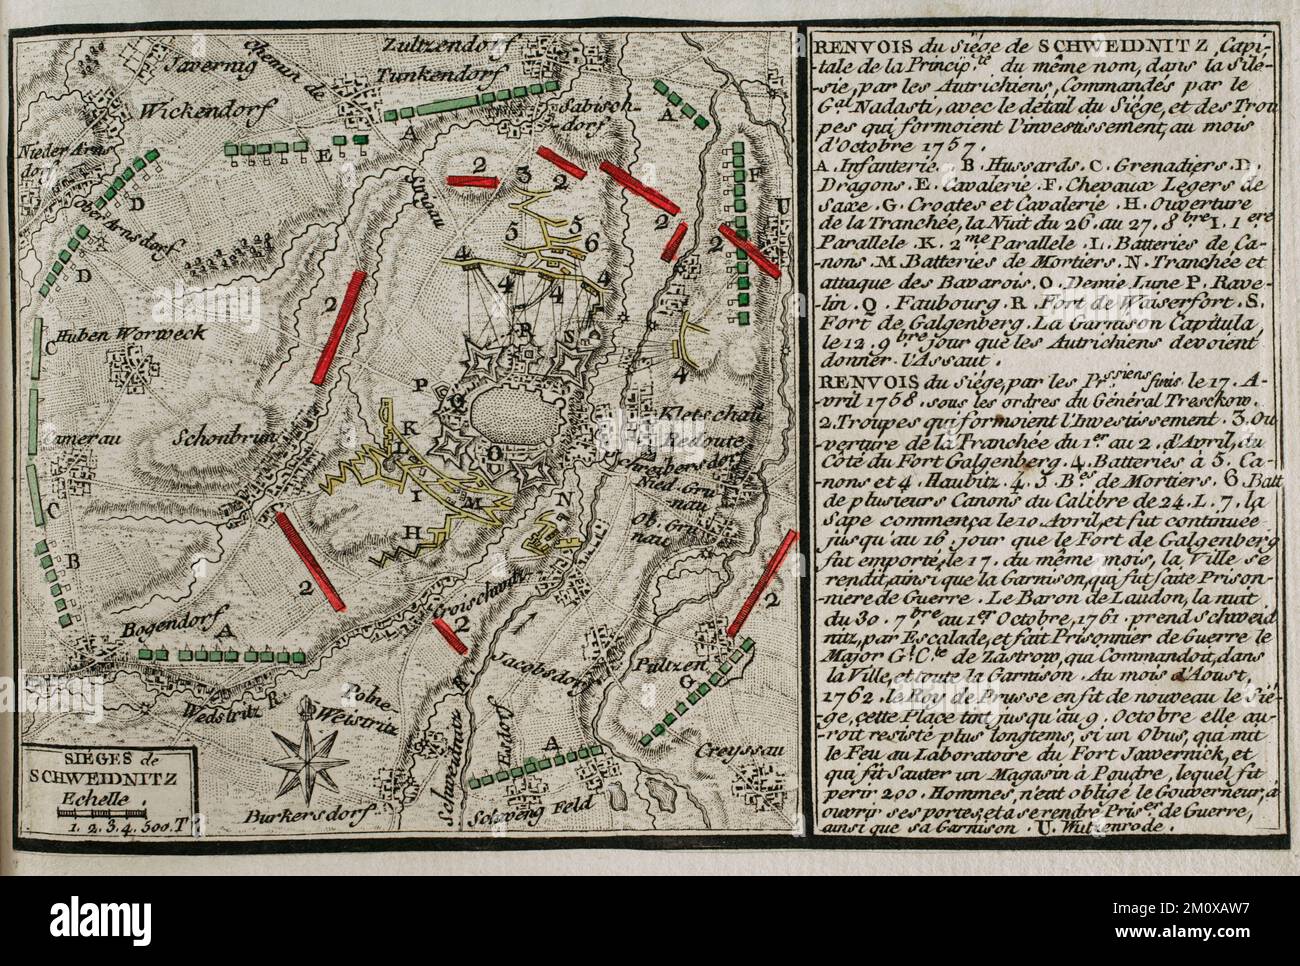 Guerra dei sette anni (1756-1763). Terza guerra silesiana. Mappa dell'assedio di Schweidnitz, 1757. Il 14 ottobre 1757, un corpo militare austriaco sotto il comando del generale Franz Leopold von Nadasdy circondò Schweidinitz. Il 15 marzo 1758, Federico il Grande si trasferì a Breslau. Prima di iniziare la nuova campagna, dovette controllare la cittadina austriaca di Schweidnitz. L'ordine di iniziare l'assedio di Schweidnitz fu dato al generale von Tresckow. Il 18 aprile 1758 la guarnigione austriaca di Schweidnitz abbandonò la fortezza e depose le armi. La fortezza fu occupata dai prussiani sotto Colone Foto Stock